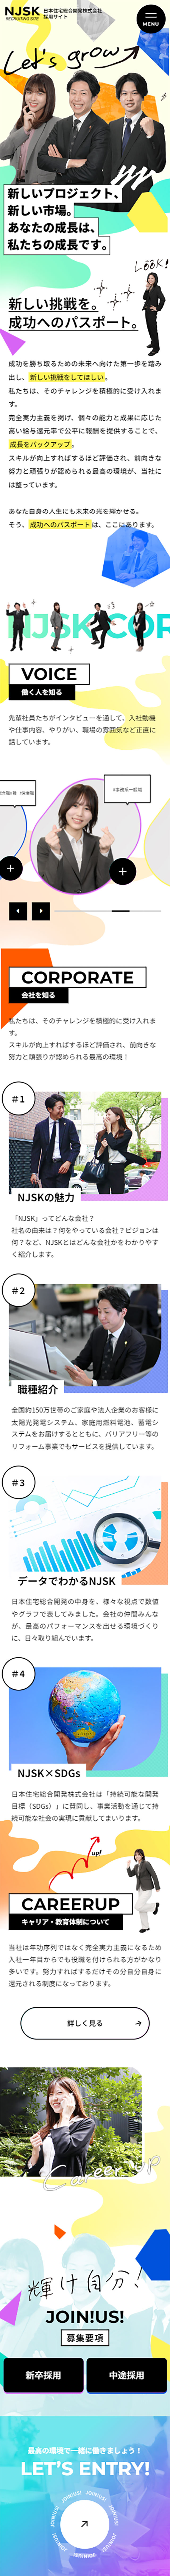 日本住宅総合開発株式会社（NJSK）採用サイト_sp_1